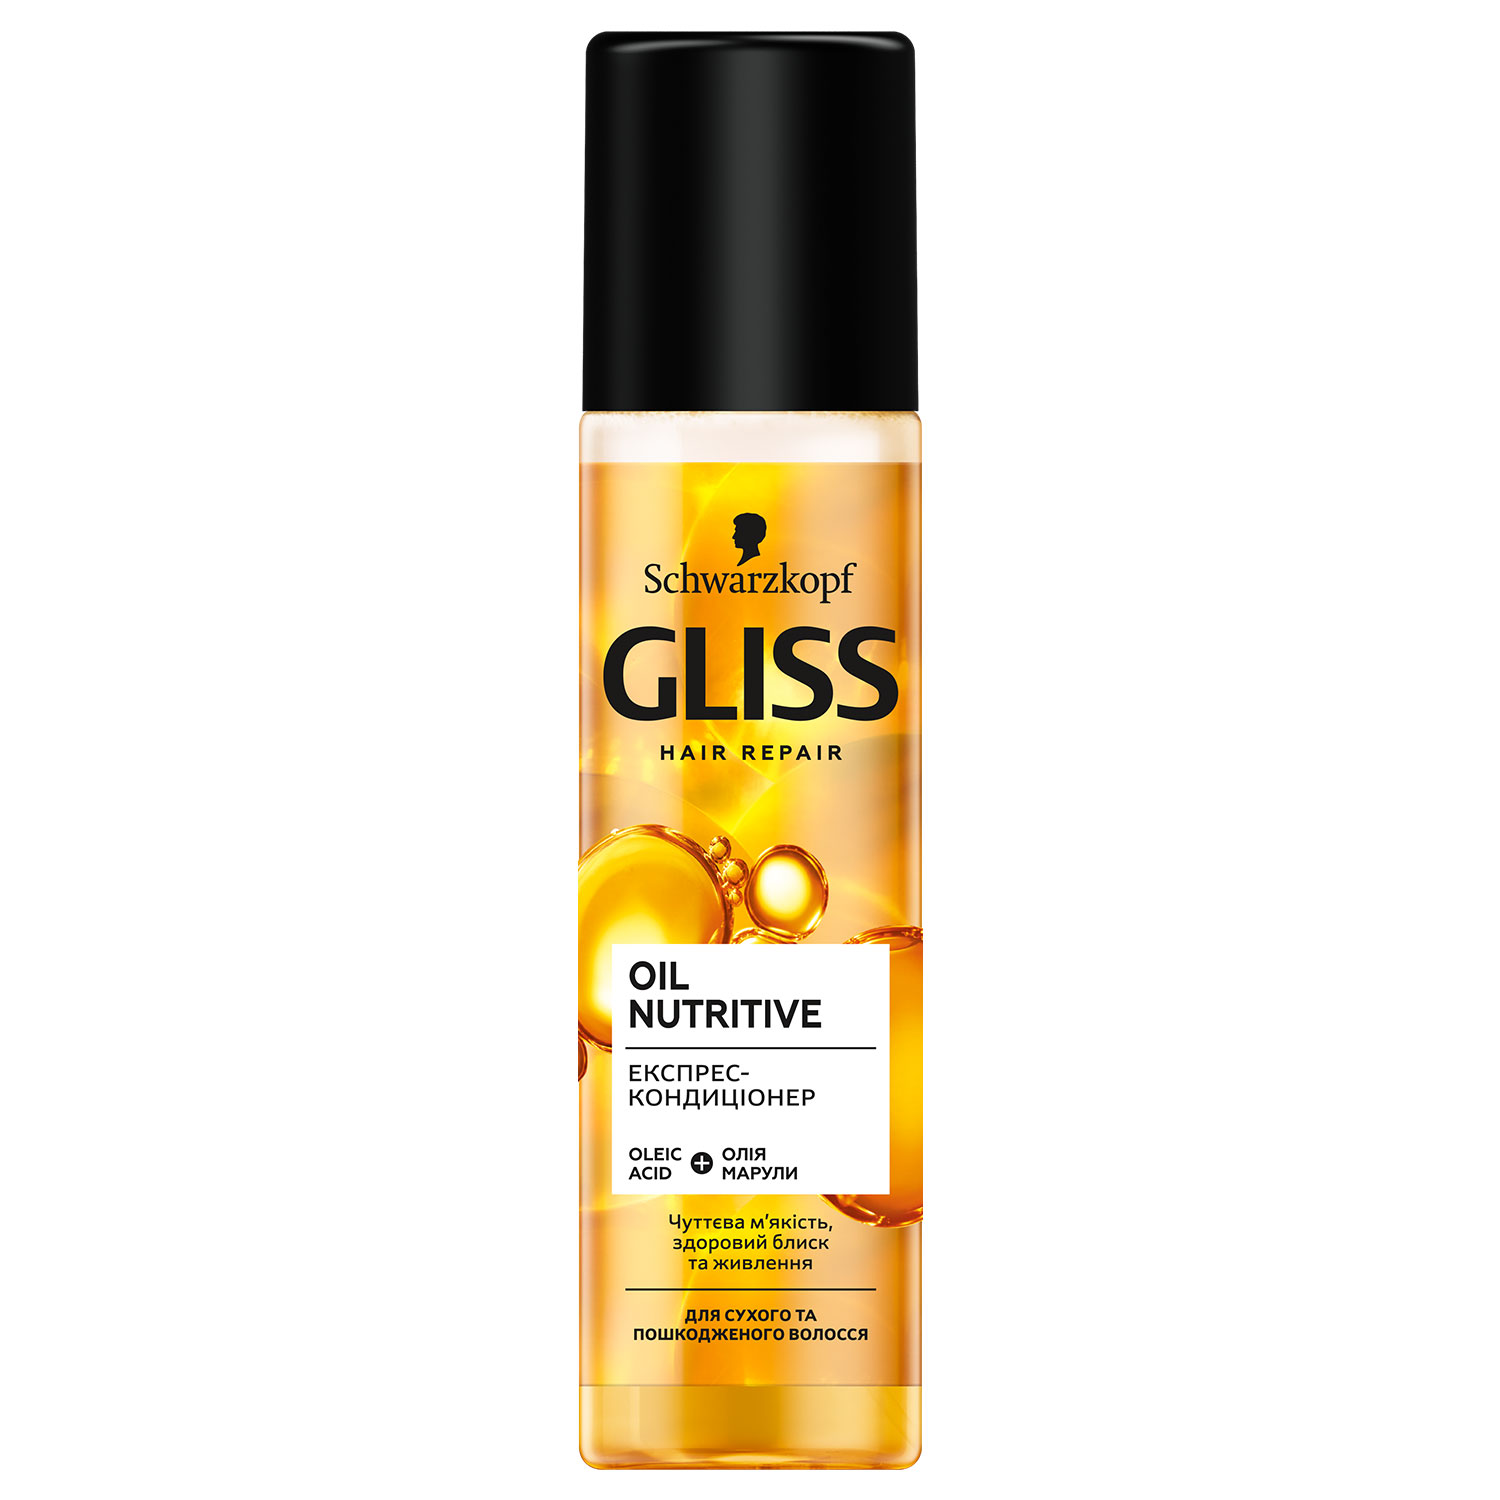 Экспресс-кондиционер GLISS Oil Nutritive для сухих и поврежденных волос, 200 мл